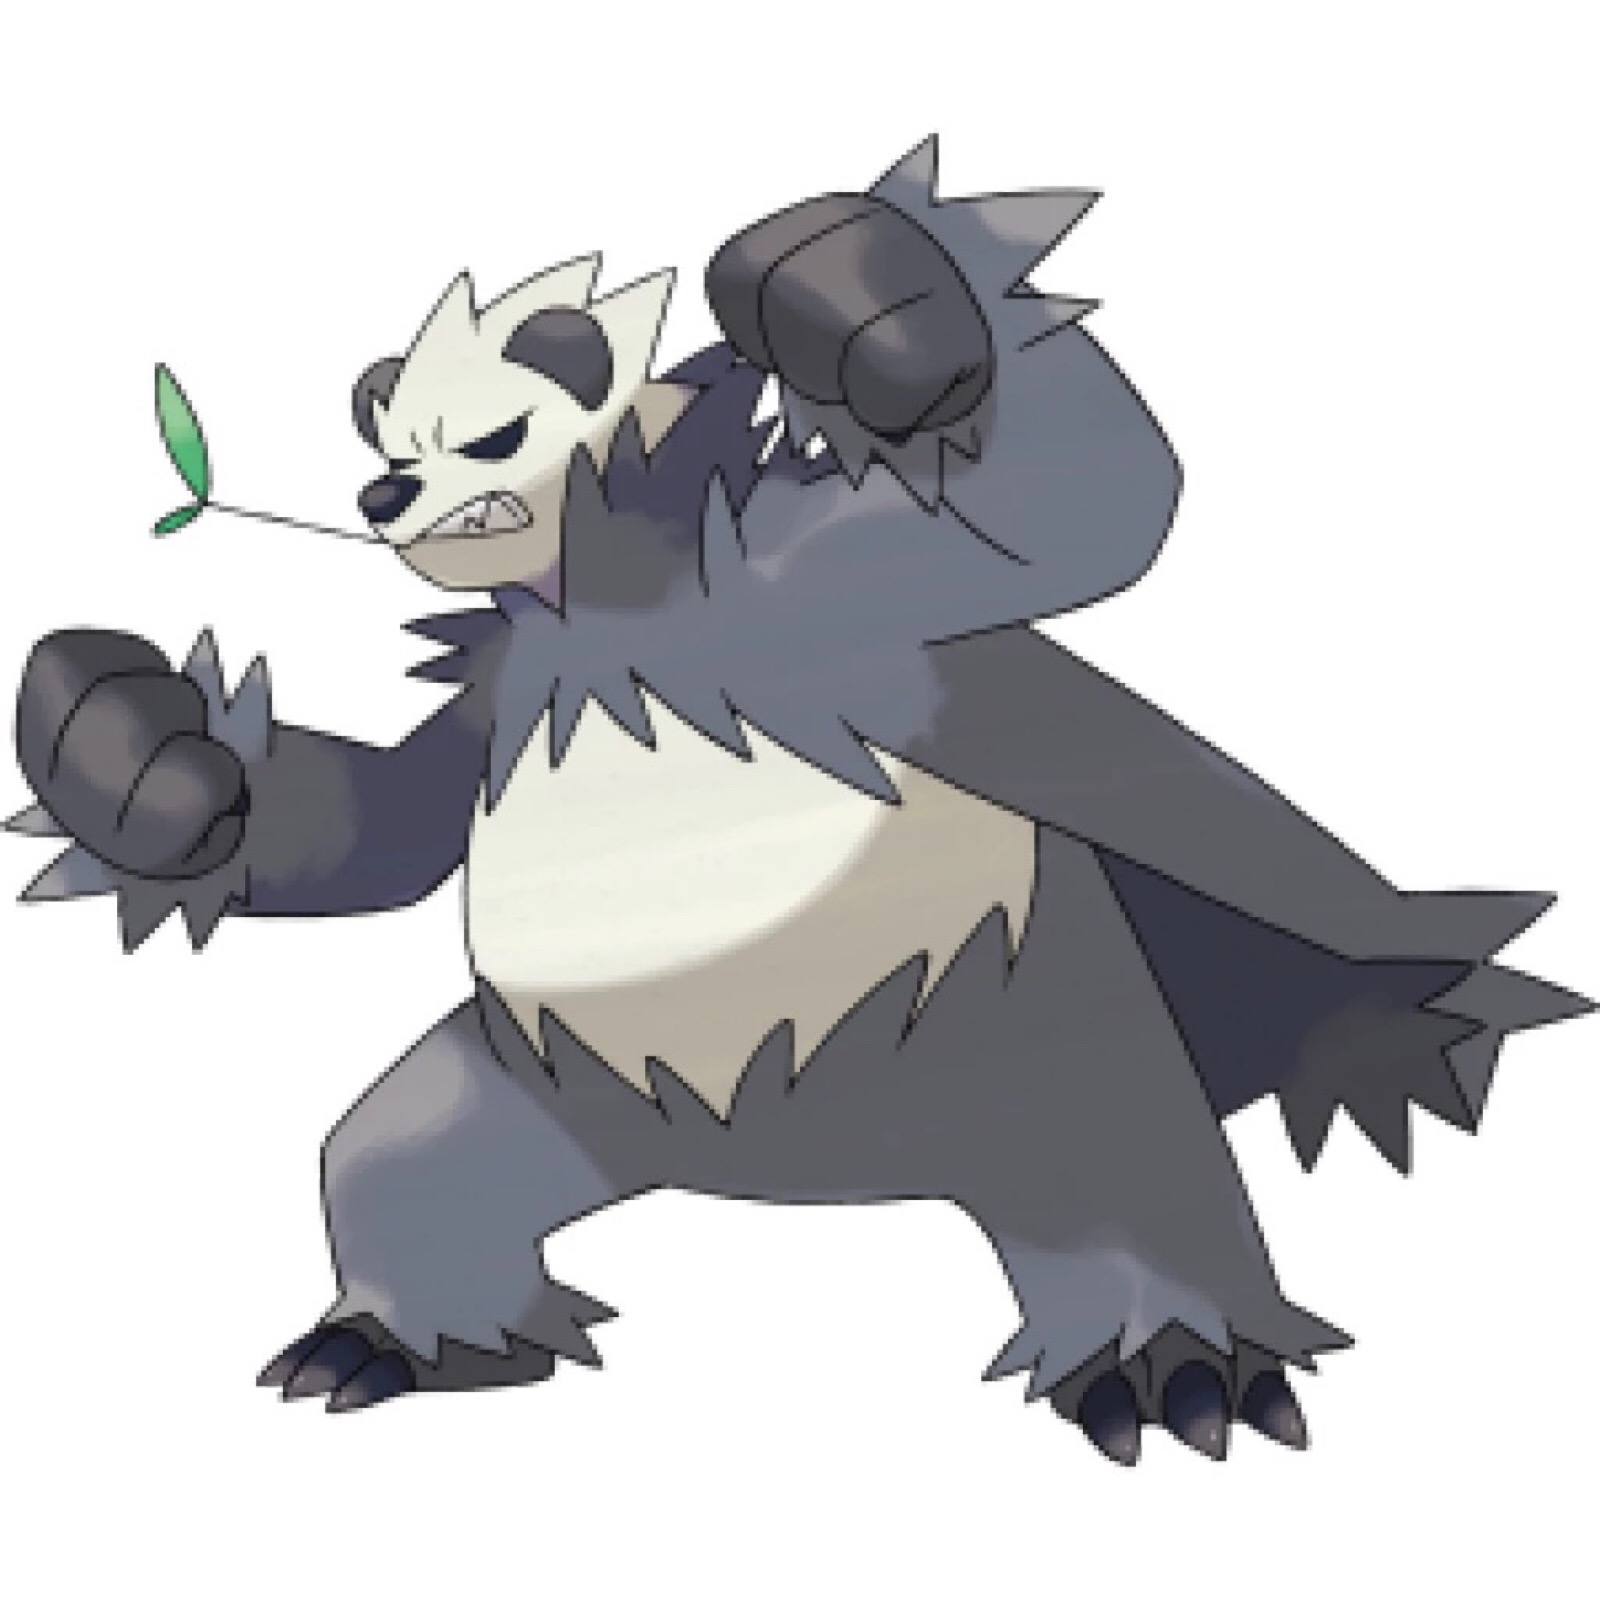 流氓熊猫:格斗 恶系,顽皮熊猫进化型